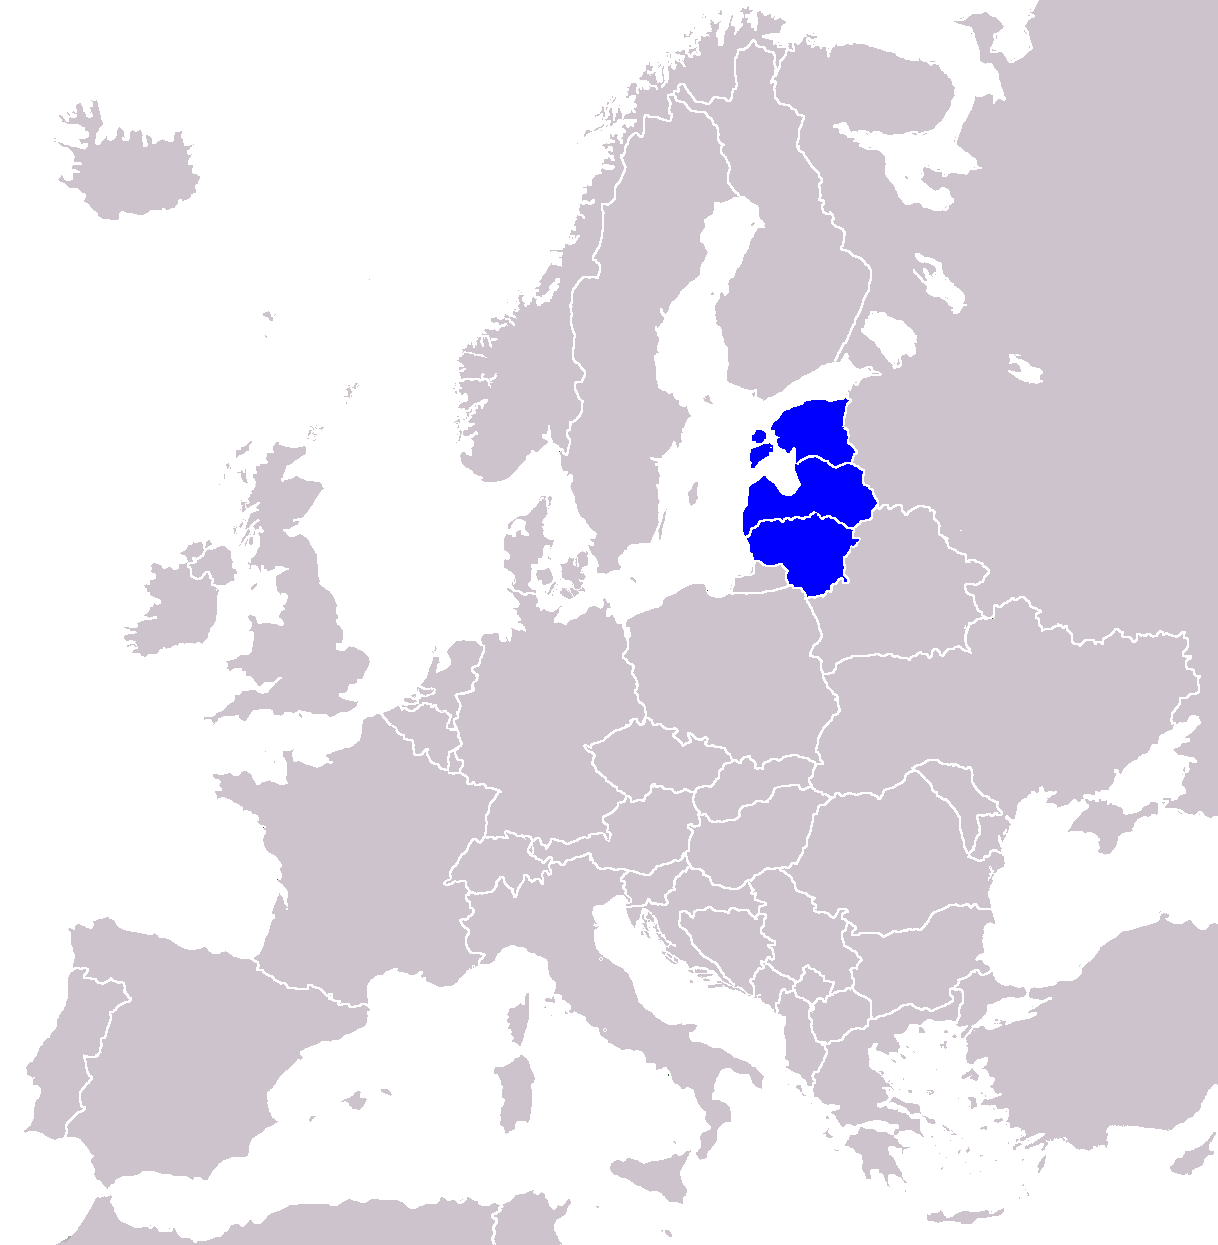 Repúblicas Bálticas (Estonia, Letonia y Lituania)